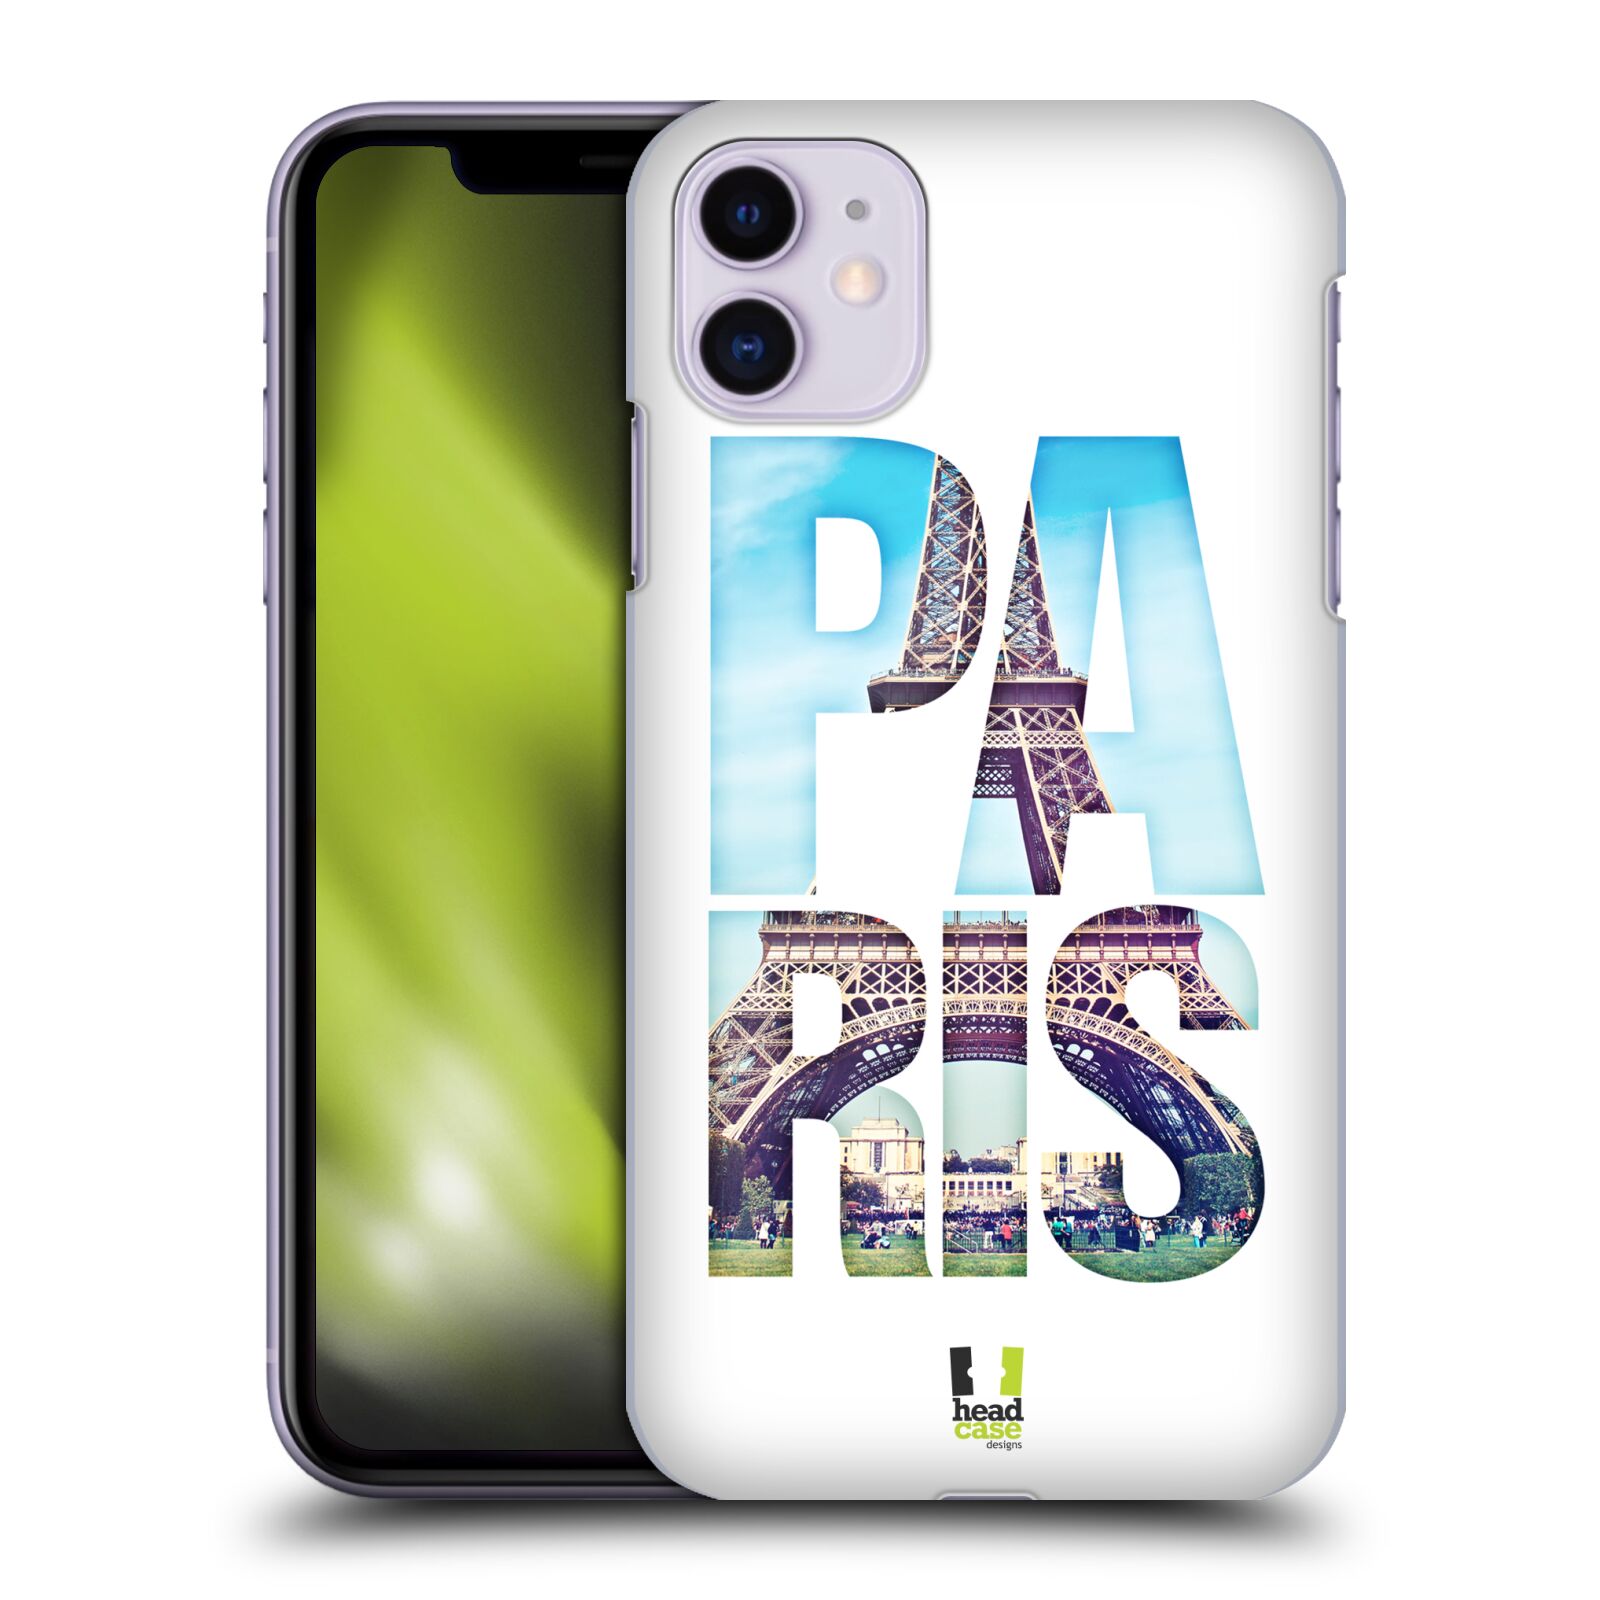 Pouzdro na mobil Apple Iphone 11 - HEAD CASE - vzor Města foto a nadpis FRANCIE, PAŘÍŽ, EIFFELOVA VĚŽ